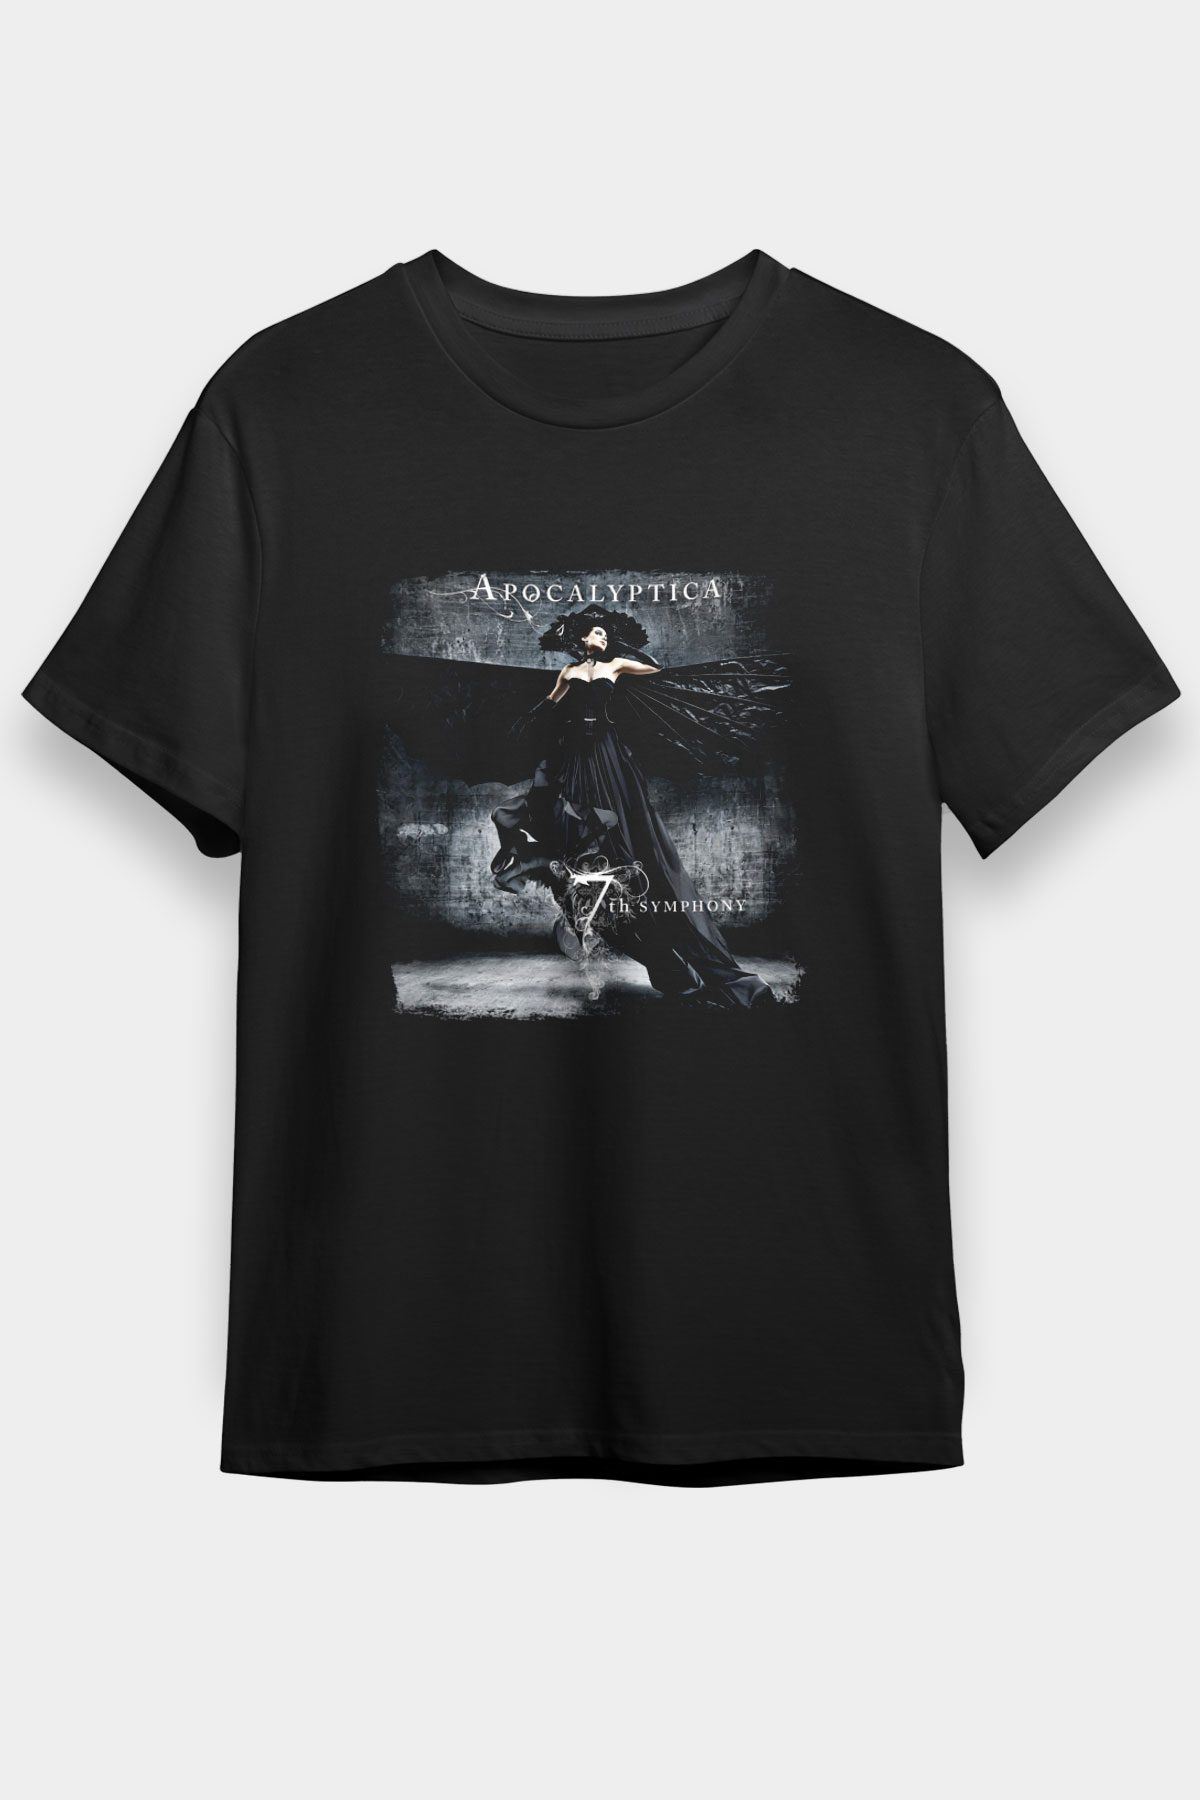 Apocalyptica  ,Music Band ,Unisex Tshirt 12